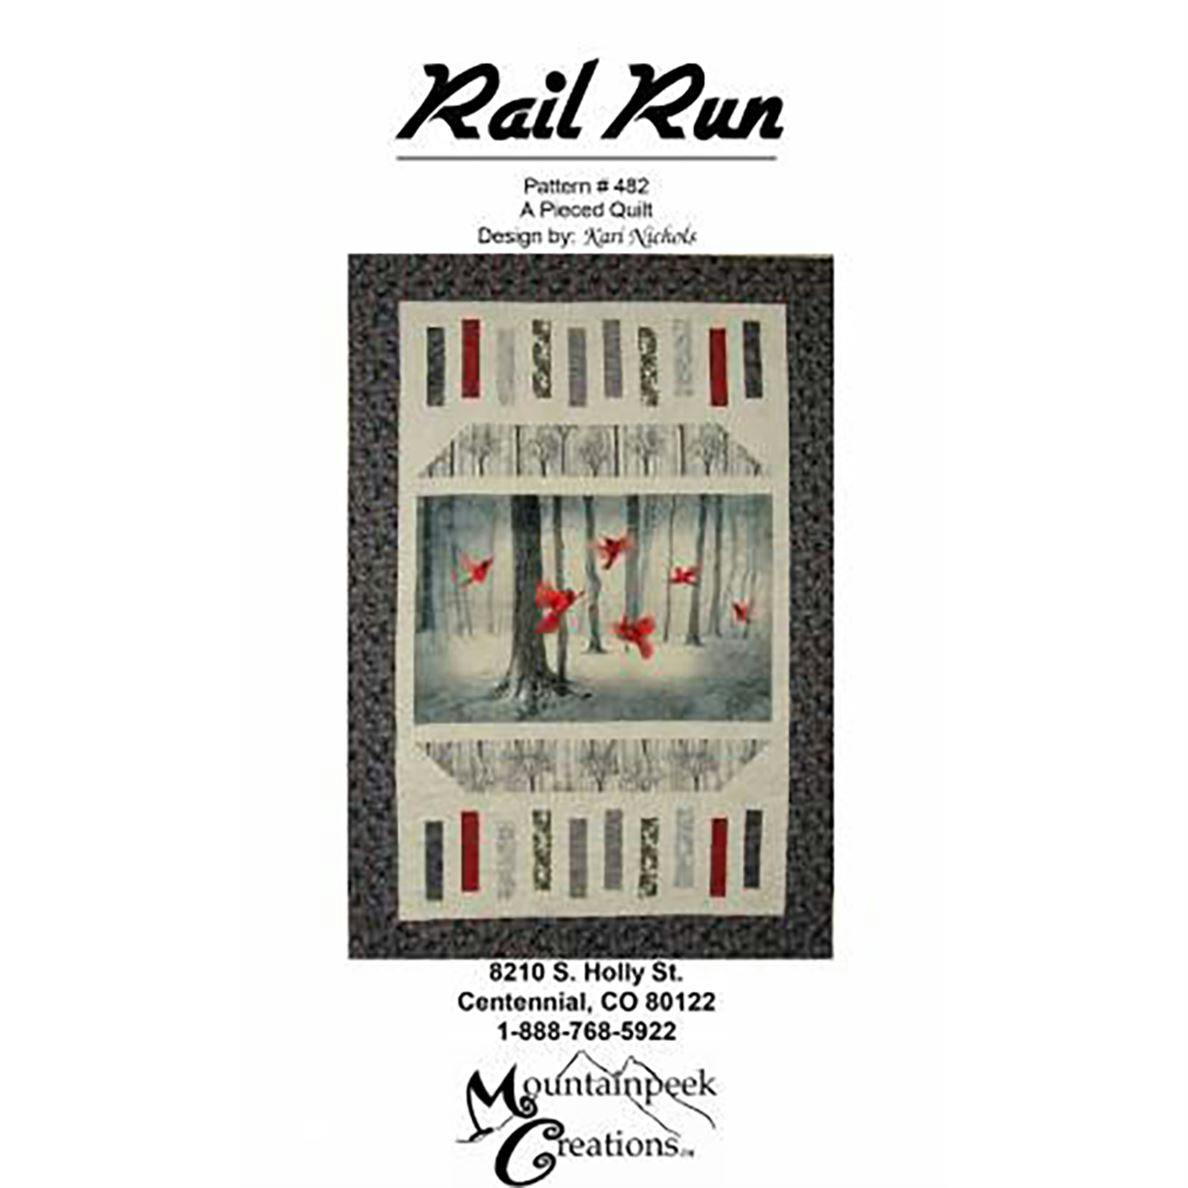 Rail Run pattern